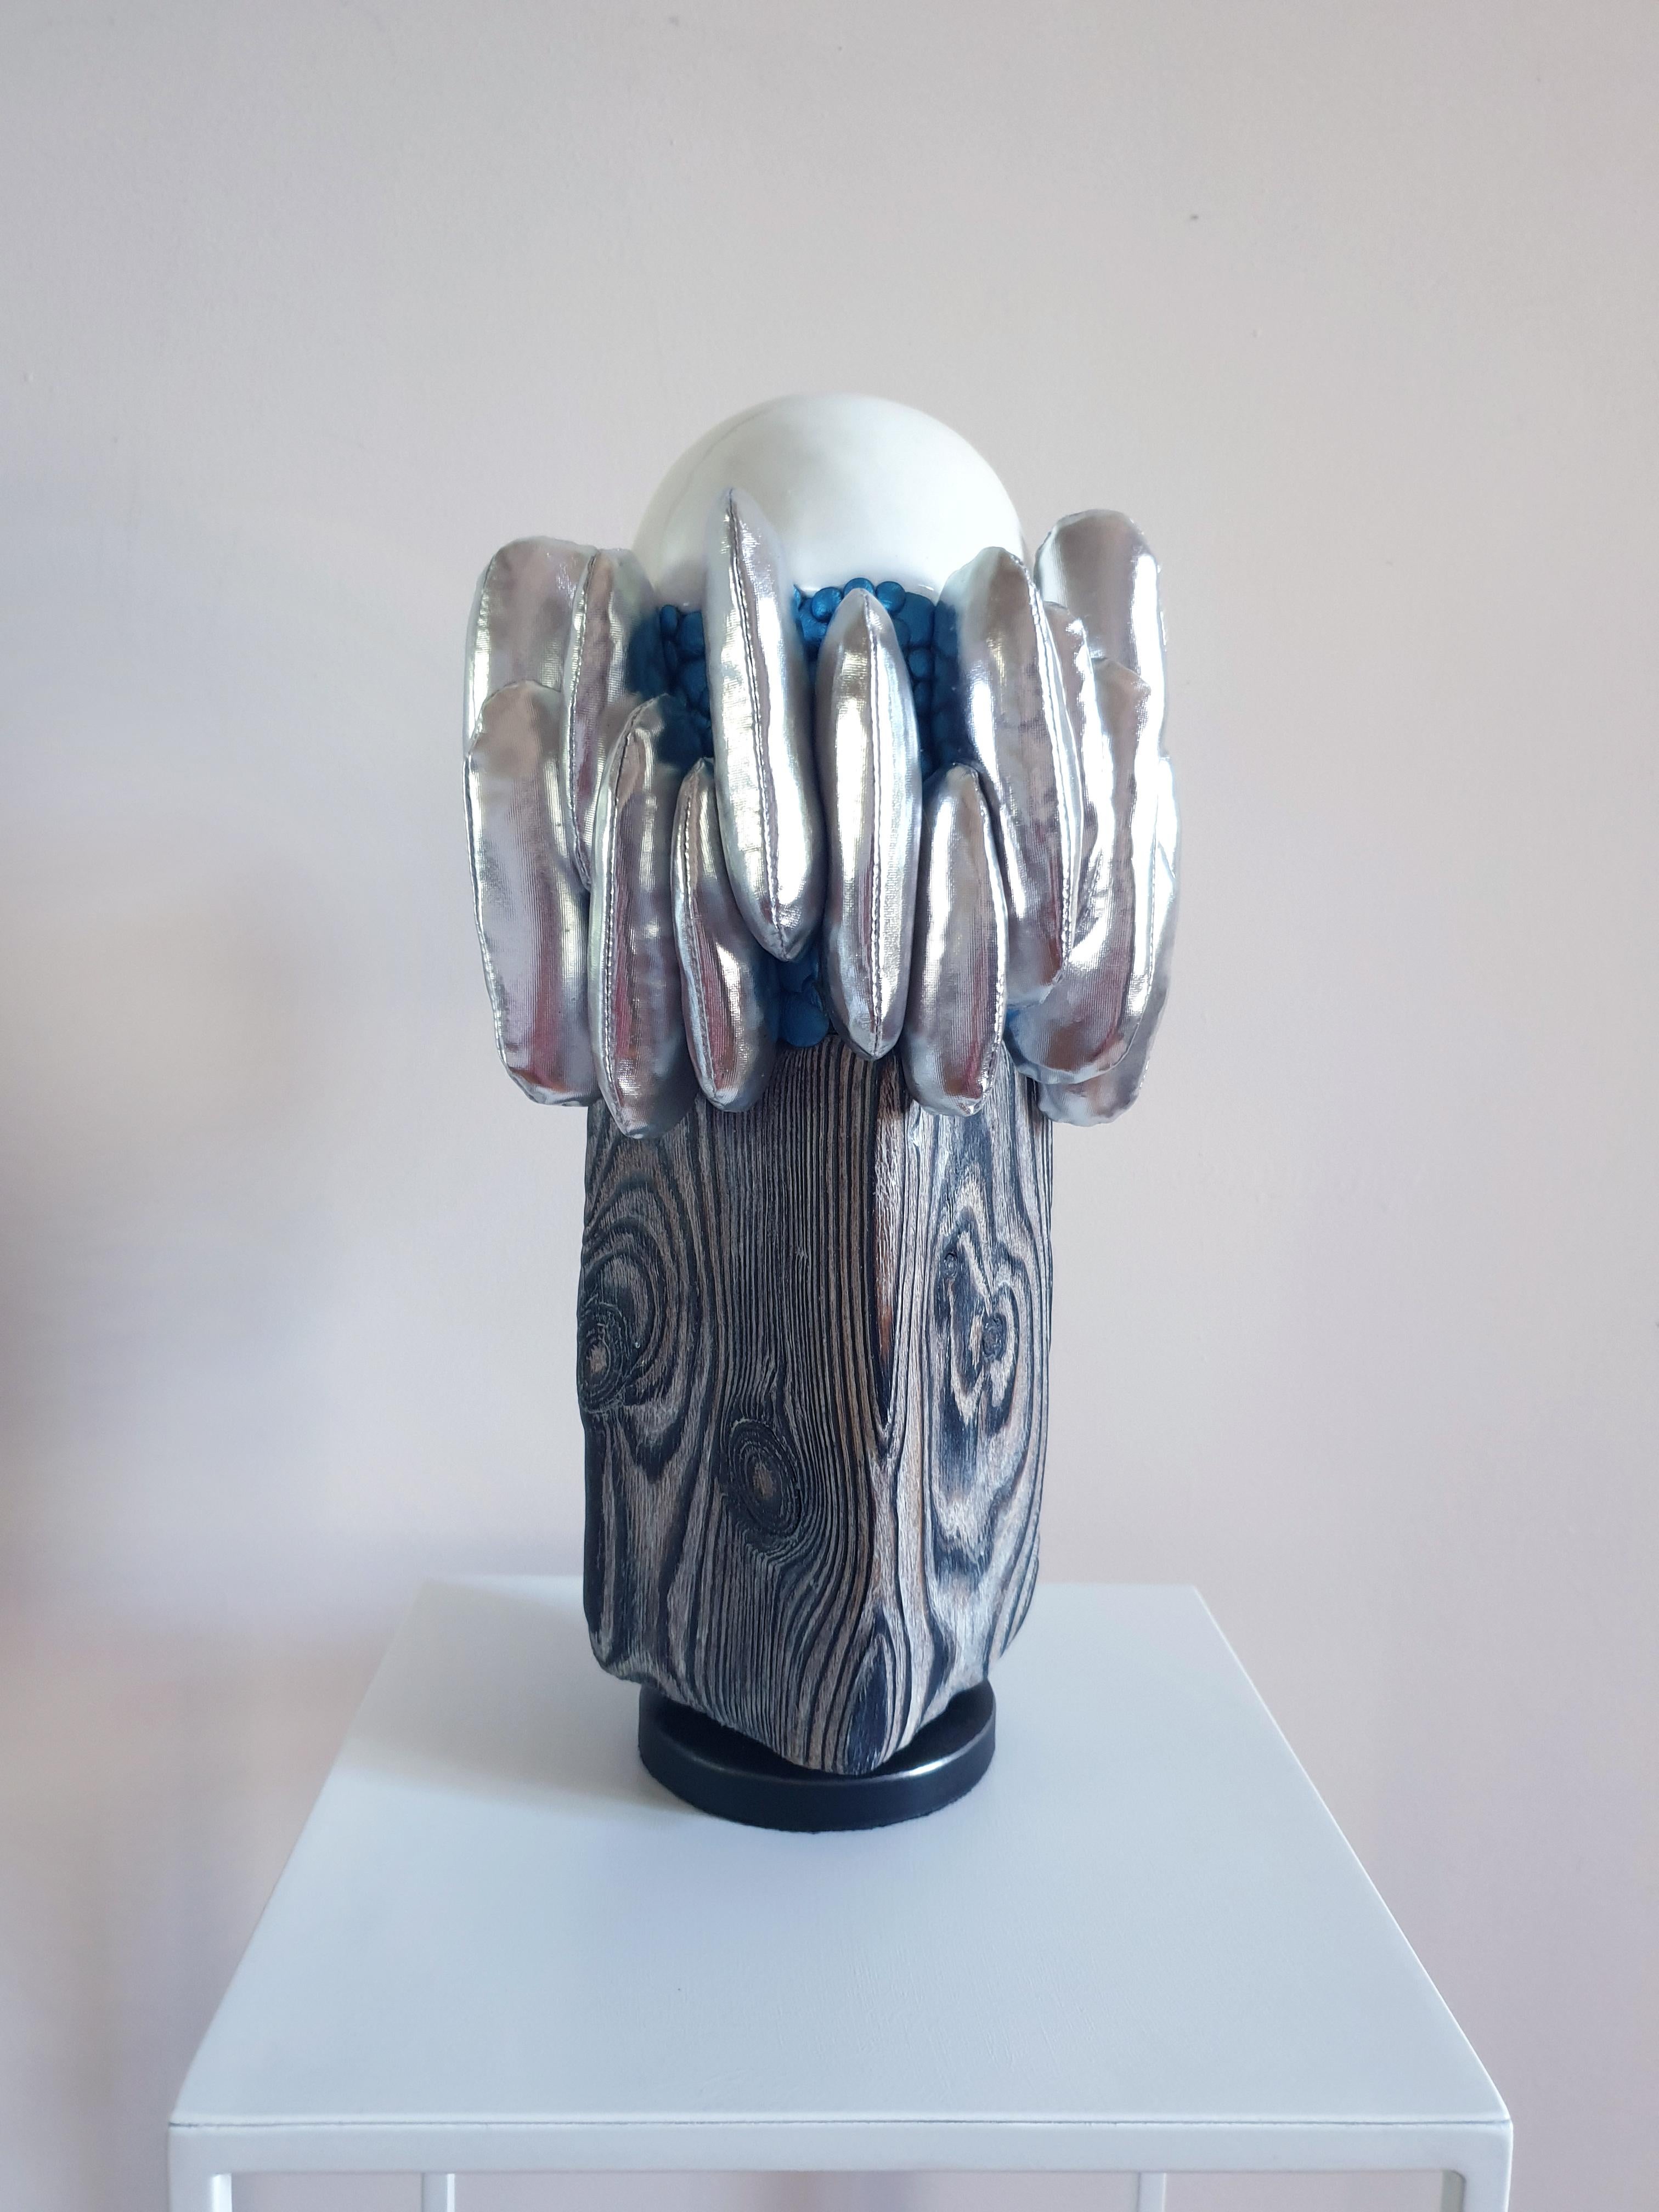 Olga Radionova Abstract Sculpture - Ice vibes. "Emotional states" series